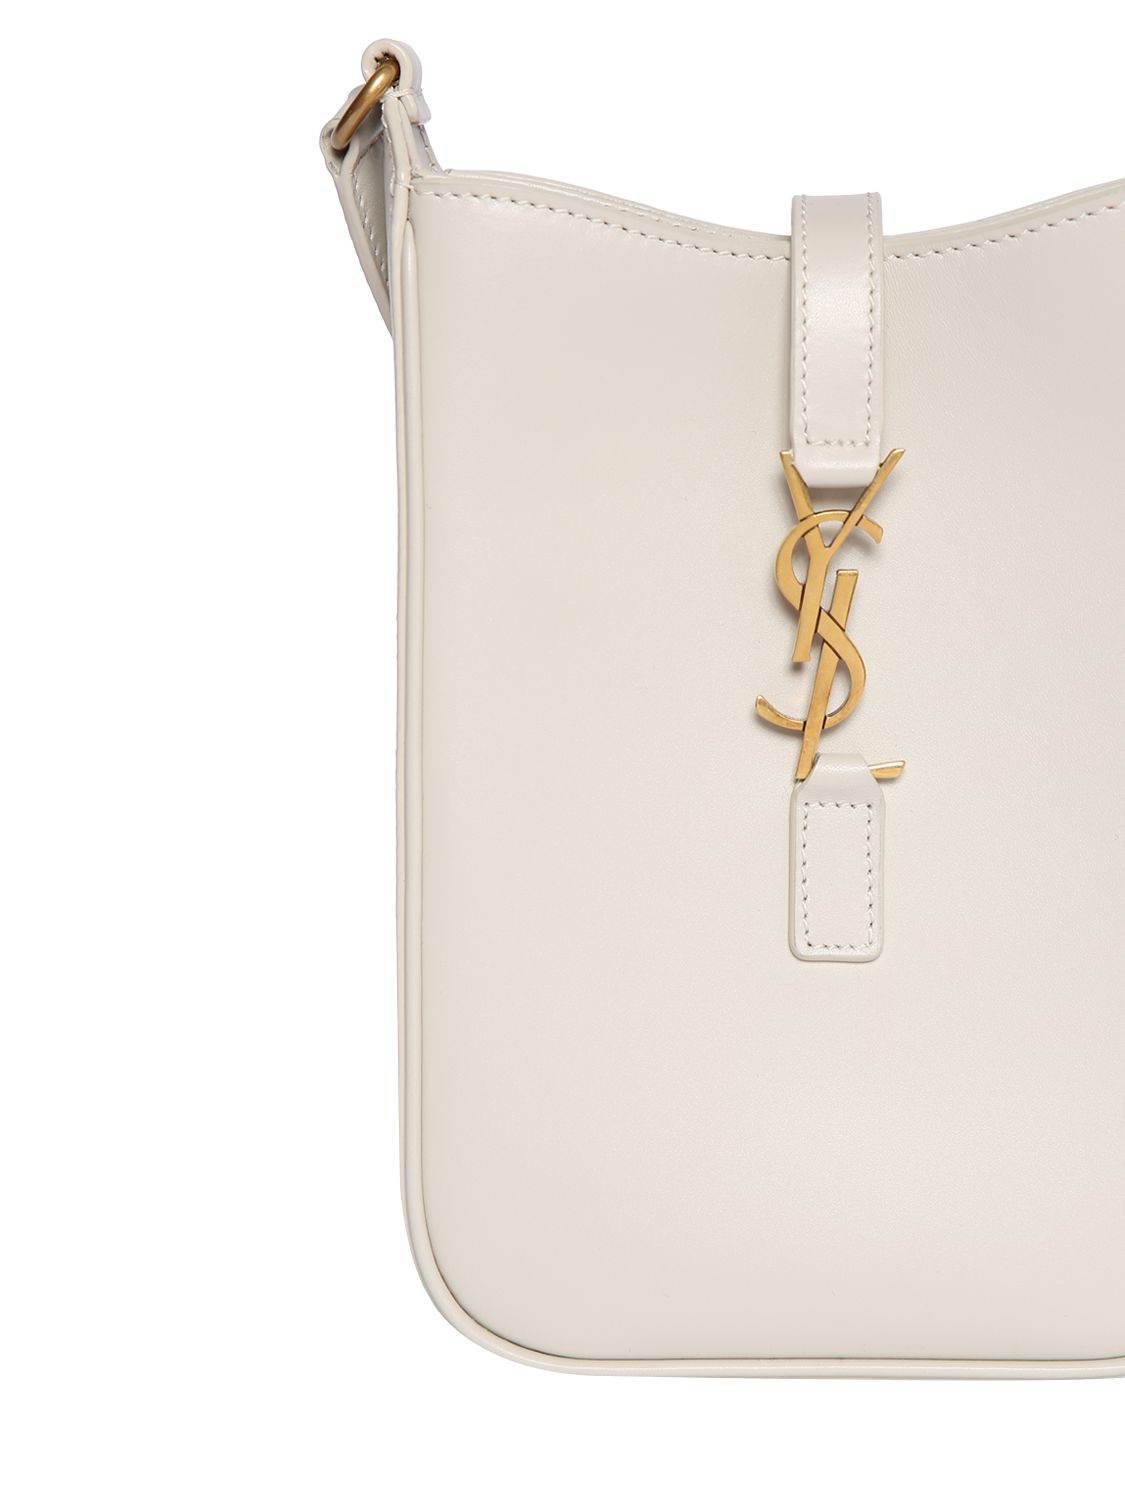 Neutral Chain-strap YSL-plaque grained-leather clutch bag, Saint Laurent